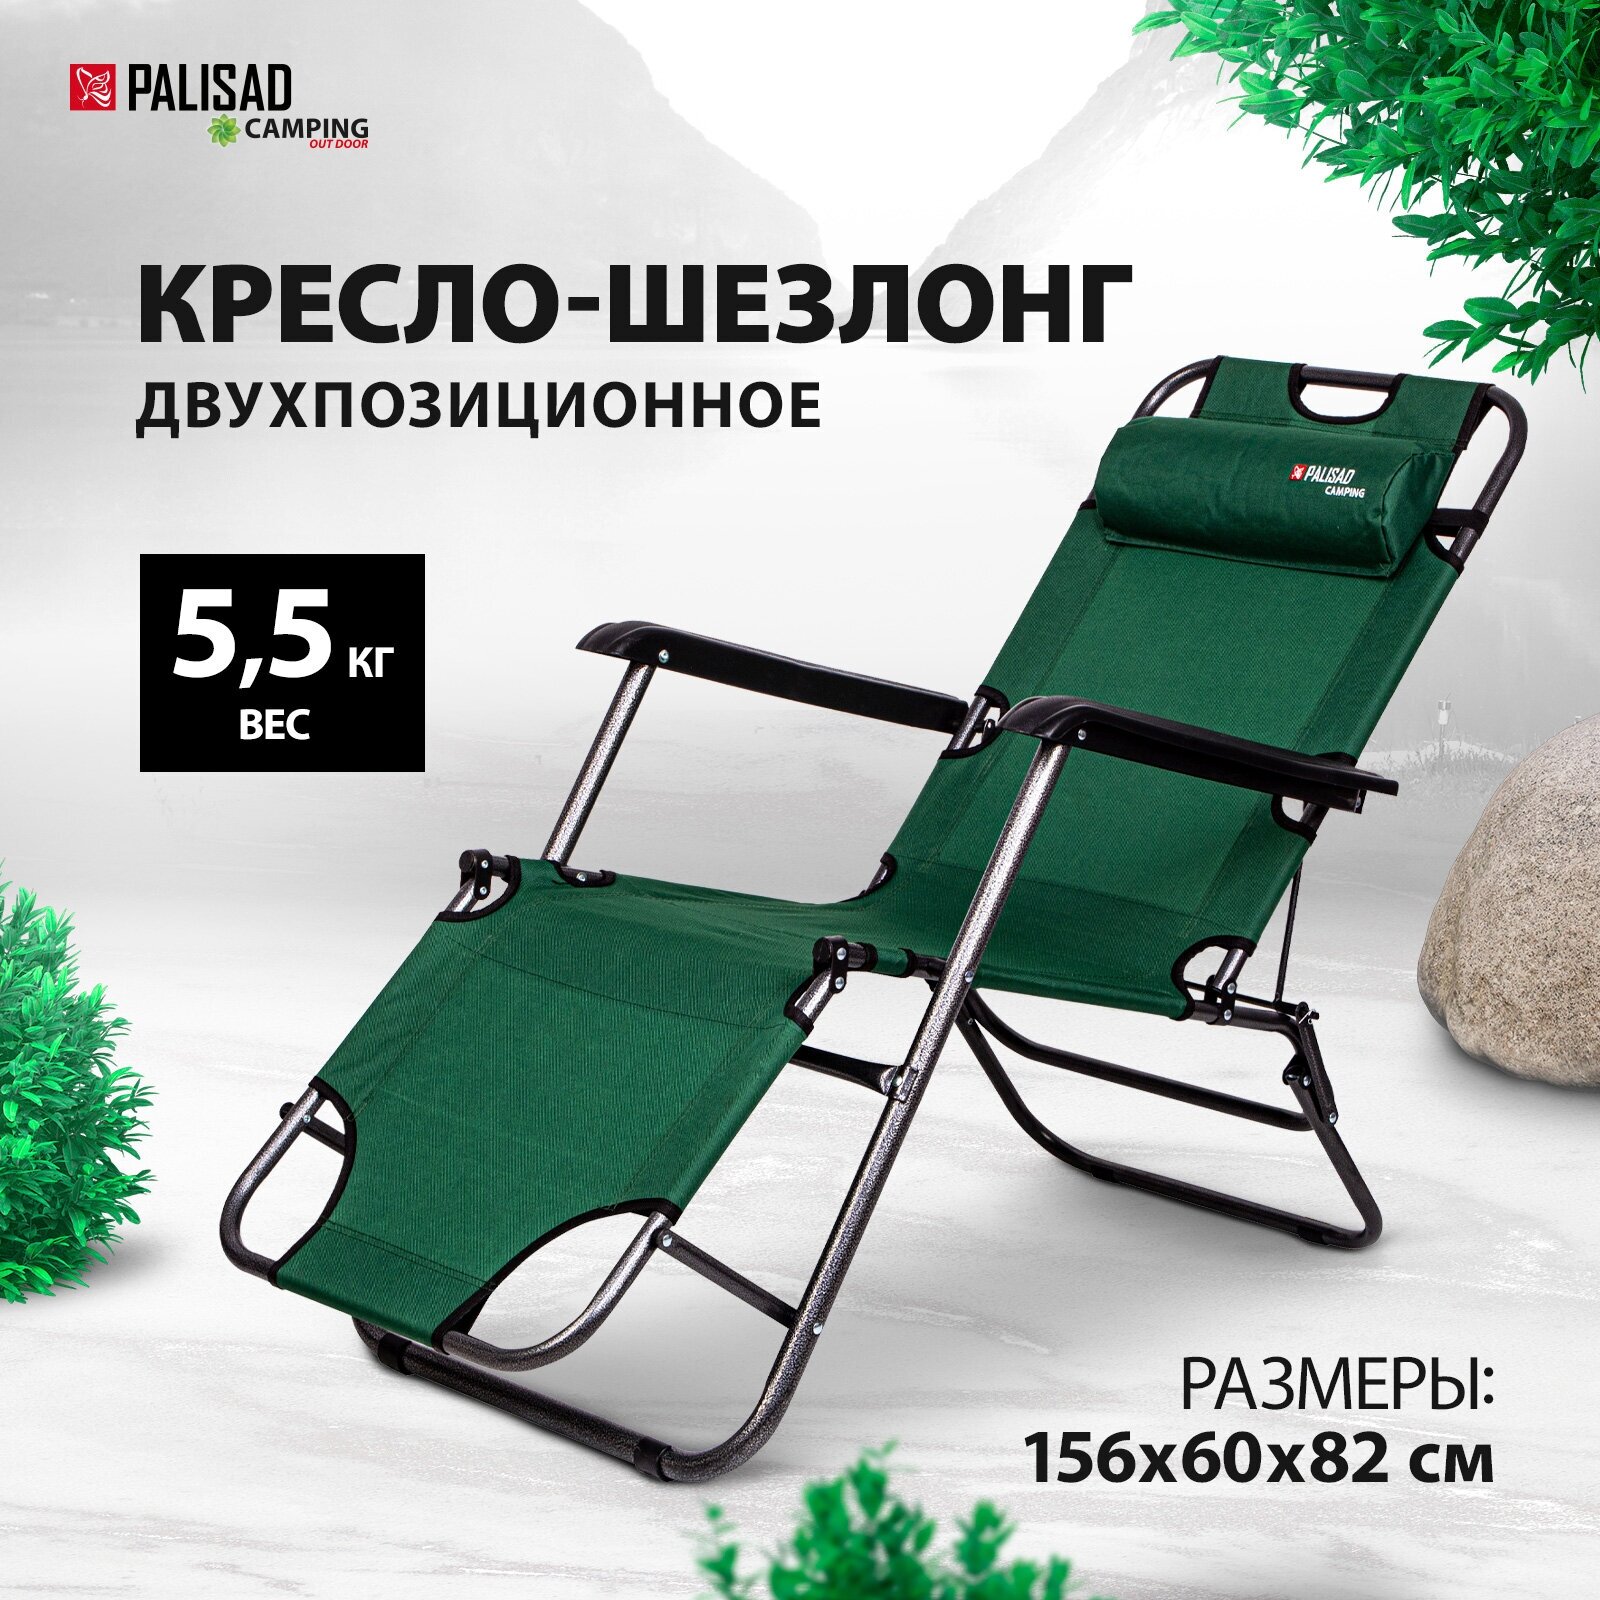 Кресло-шезлонг двухпозиционное Palisad Camping 156х60х82 см 69587 — купить в интернет-магазине по низкой цене на Яндекс Маркете